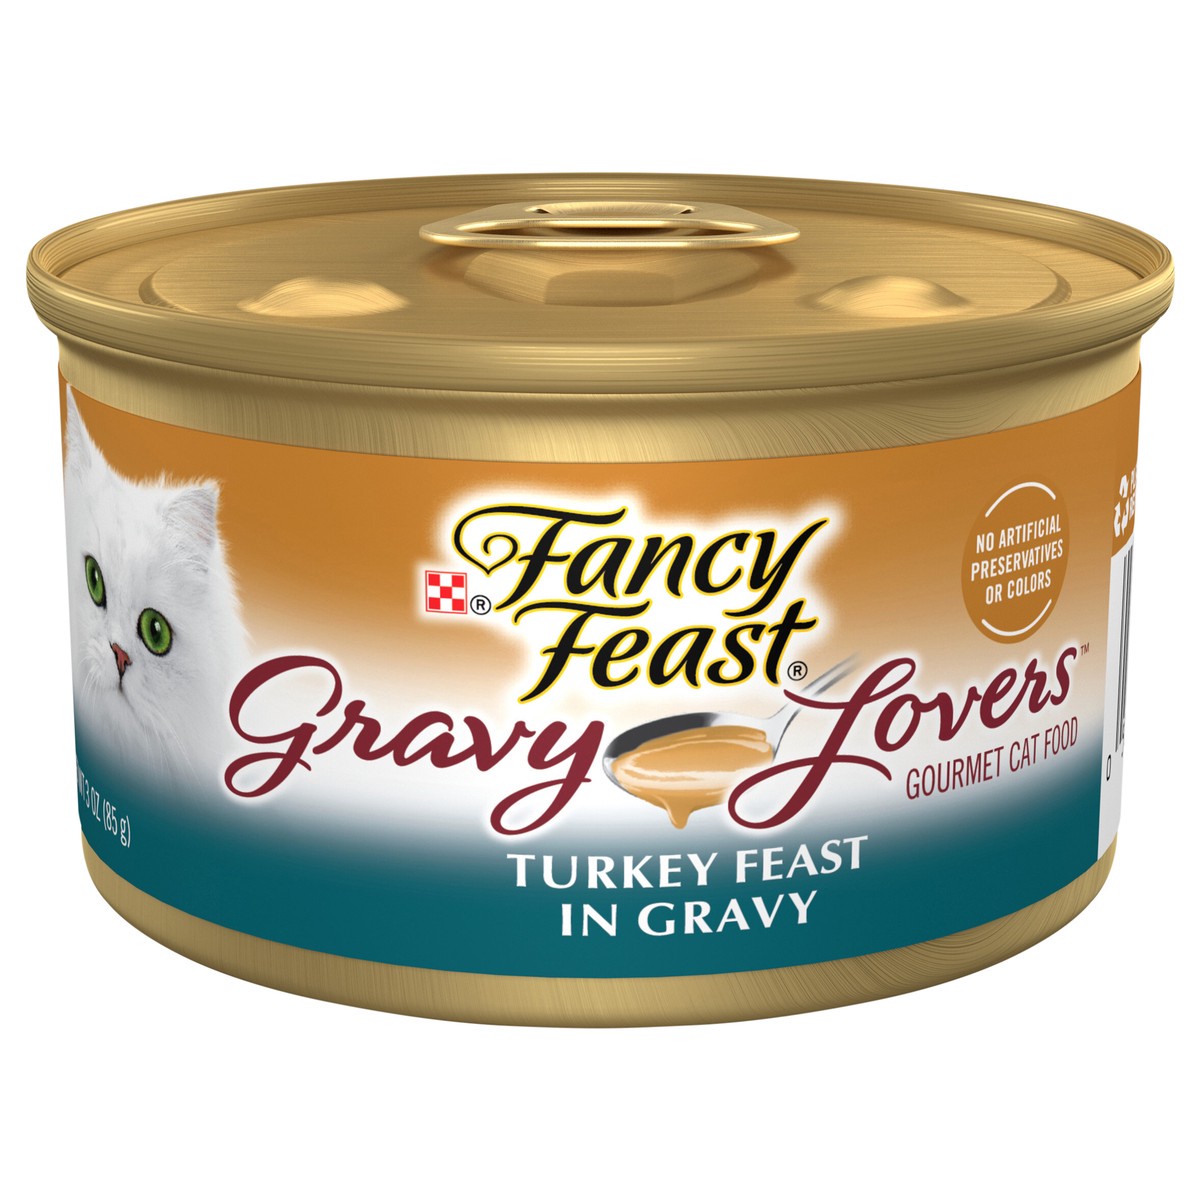 slide 1 of 7, Fancy Feast Gravy Lovers Turkey Feast In Roasted Turkey Flavor Gravy Cat Food, 3 oz